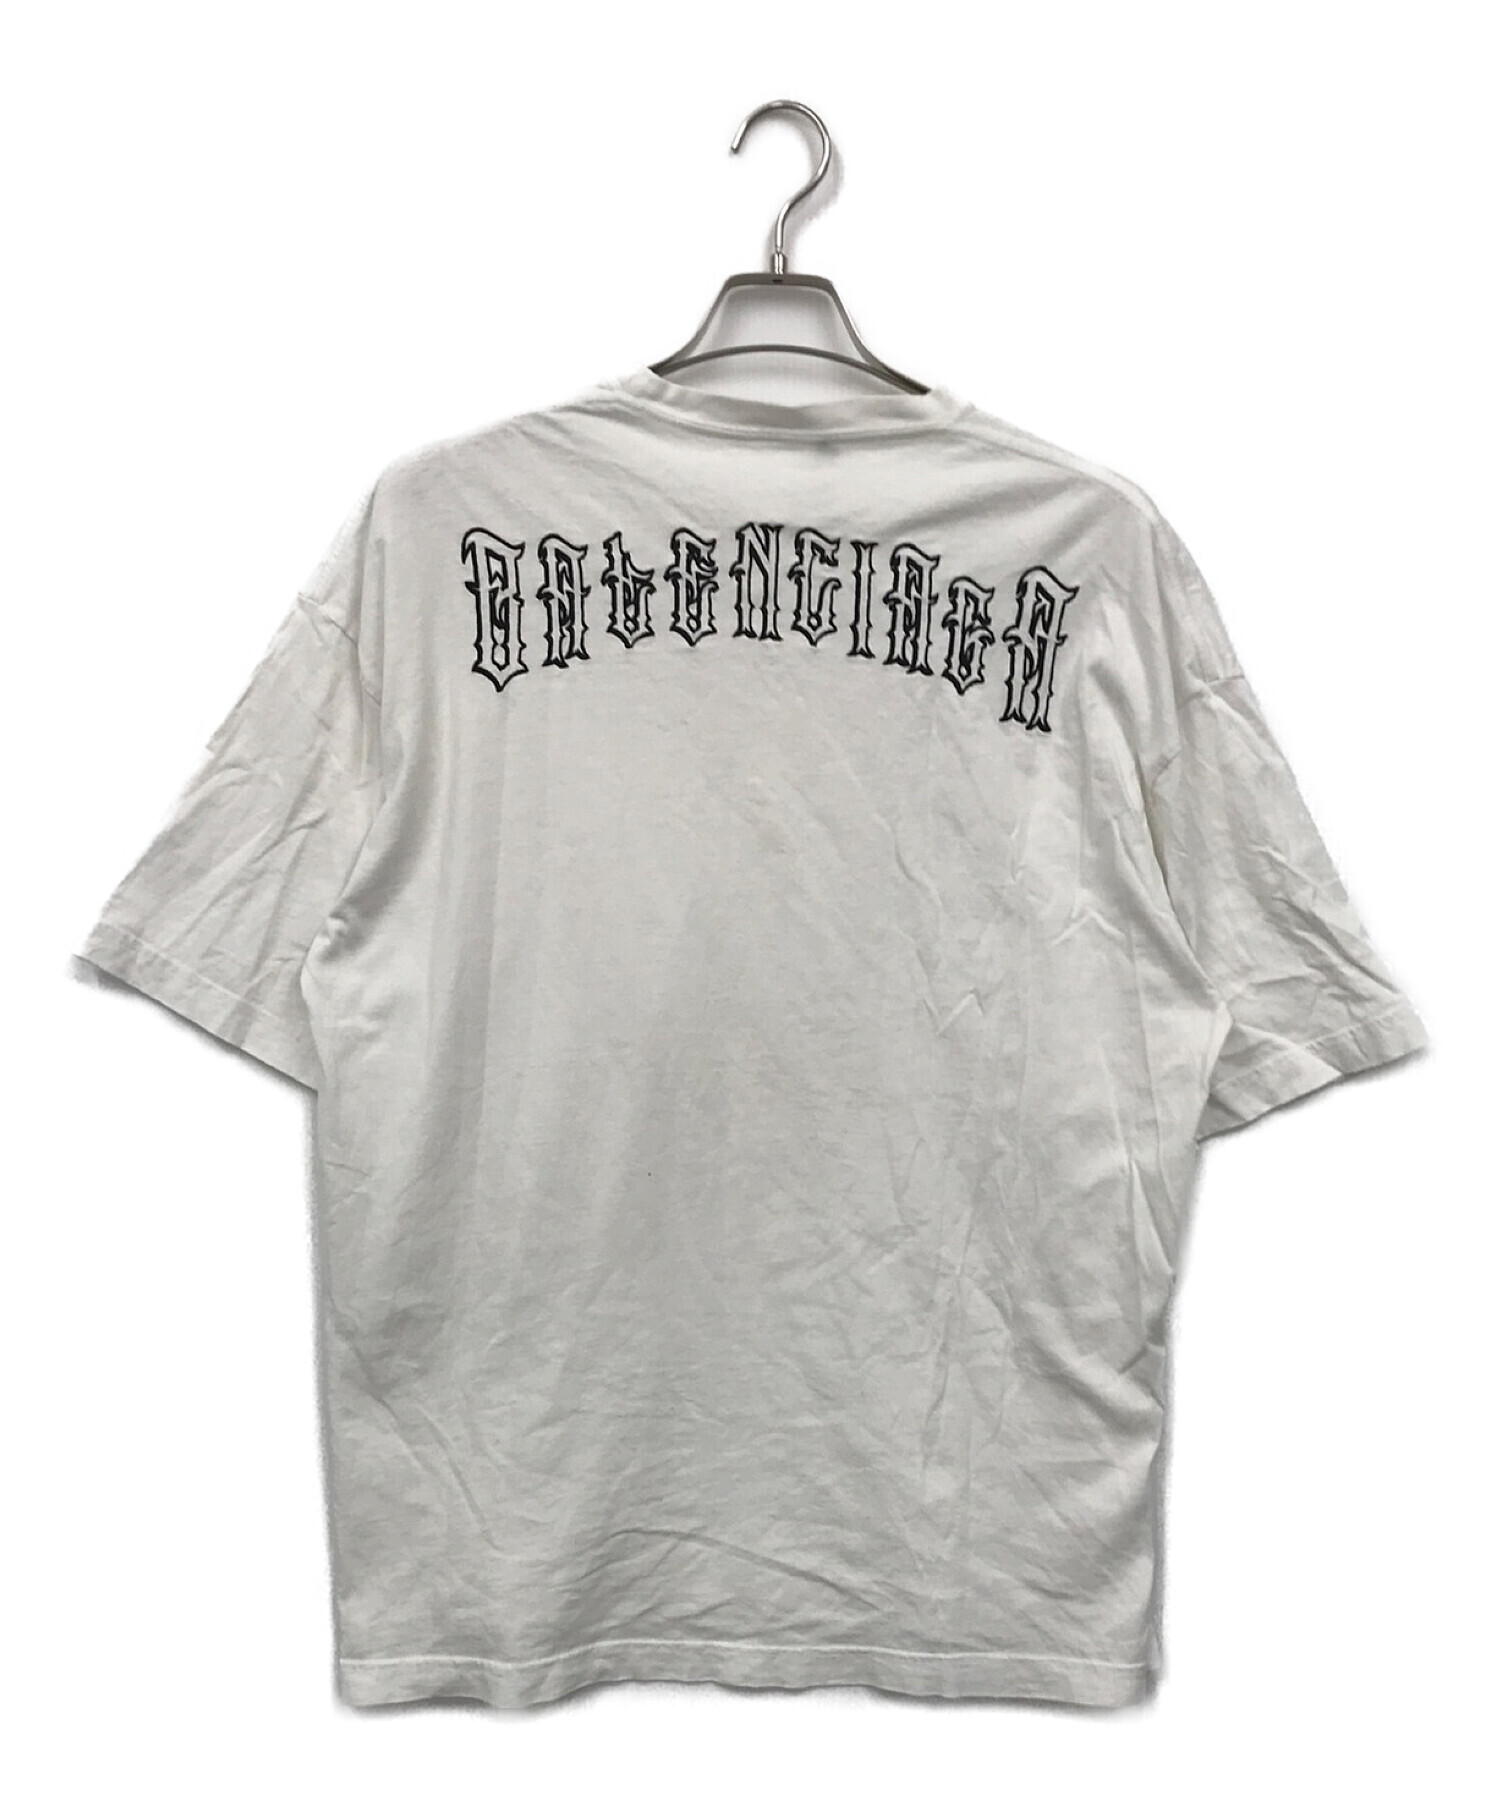 BALENCIAGA (バレンシアガ) バックタトゥーロゴTシャツ ホワイト サイズ:XS